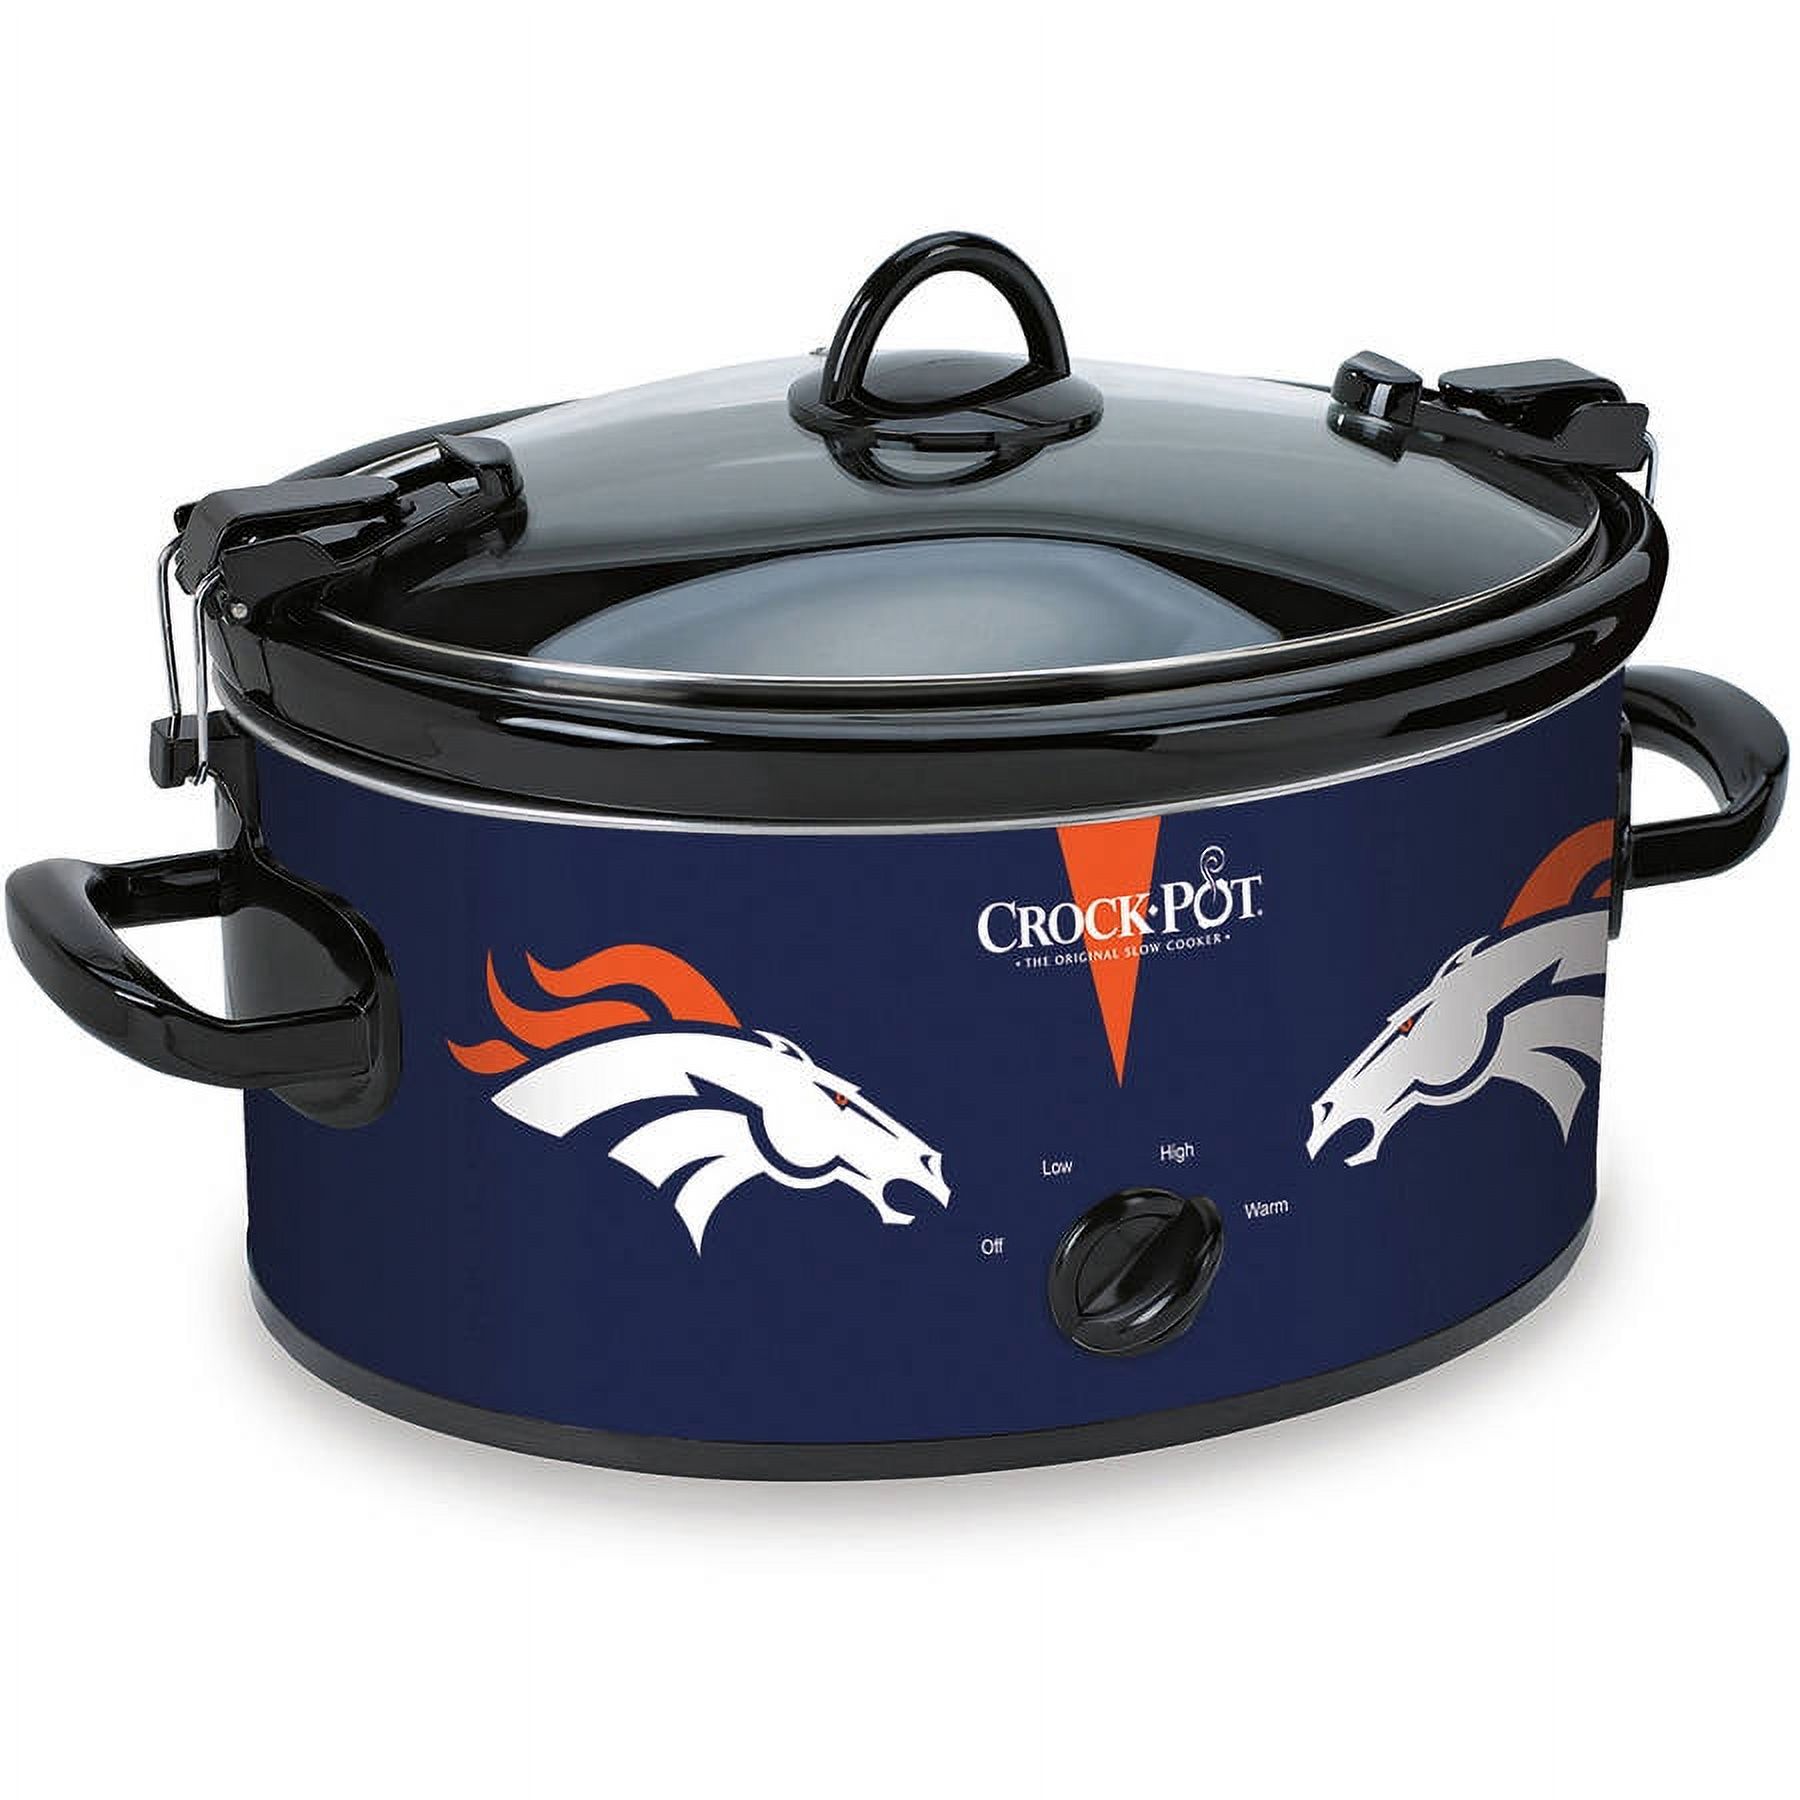 Crock-Pot 6 Quart NFL Denver Broncos Slow Cooker - image 1 of 2